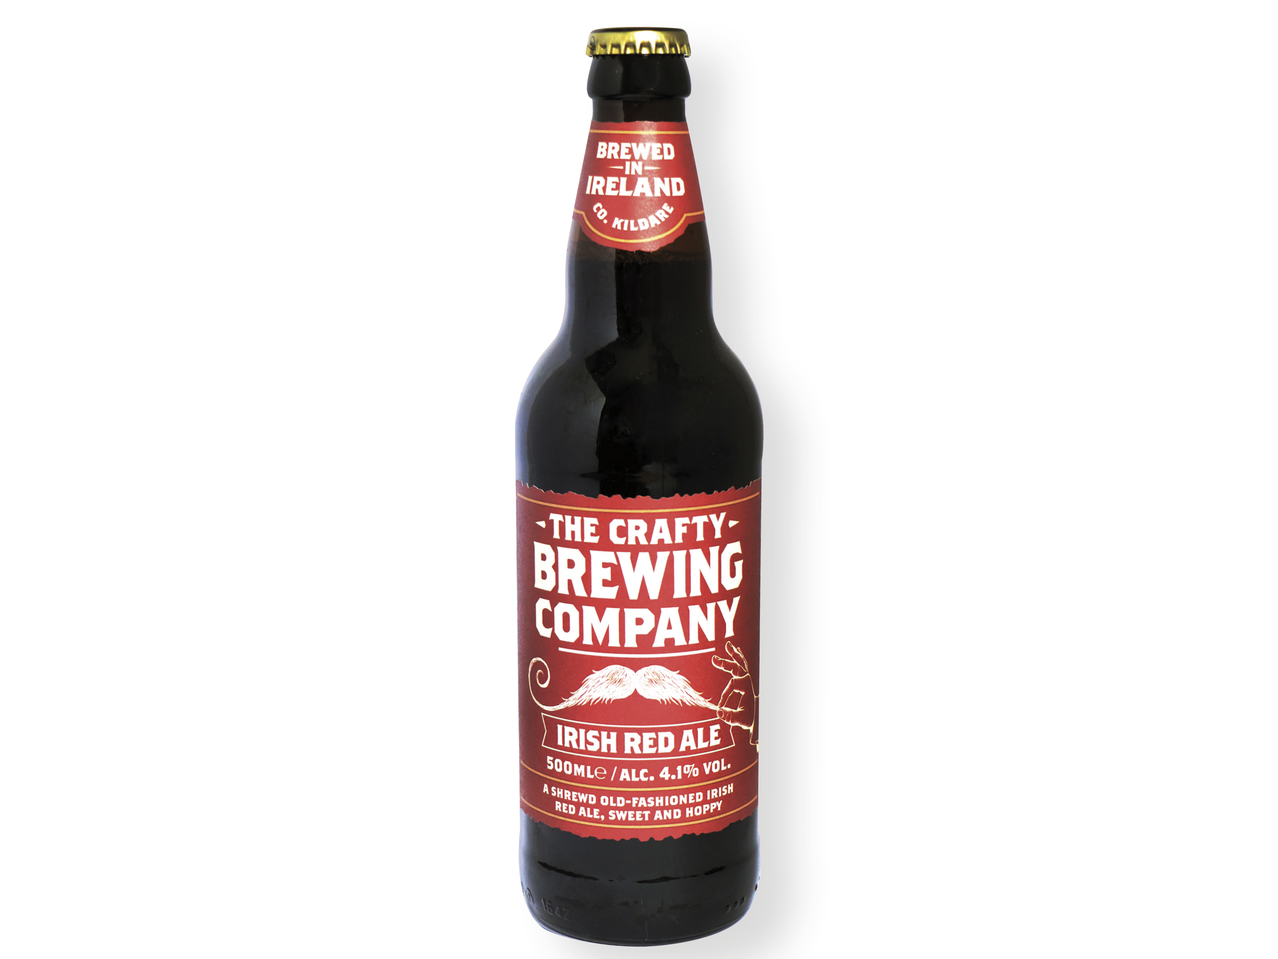 'The Crafty Brewing Company(R)' Cerveza irlandesa